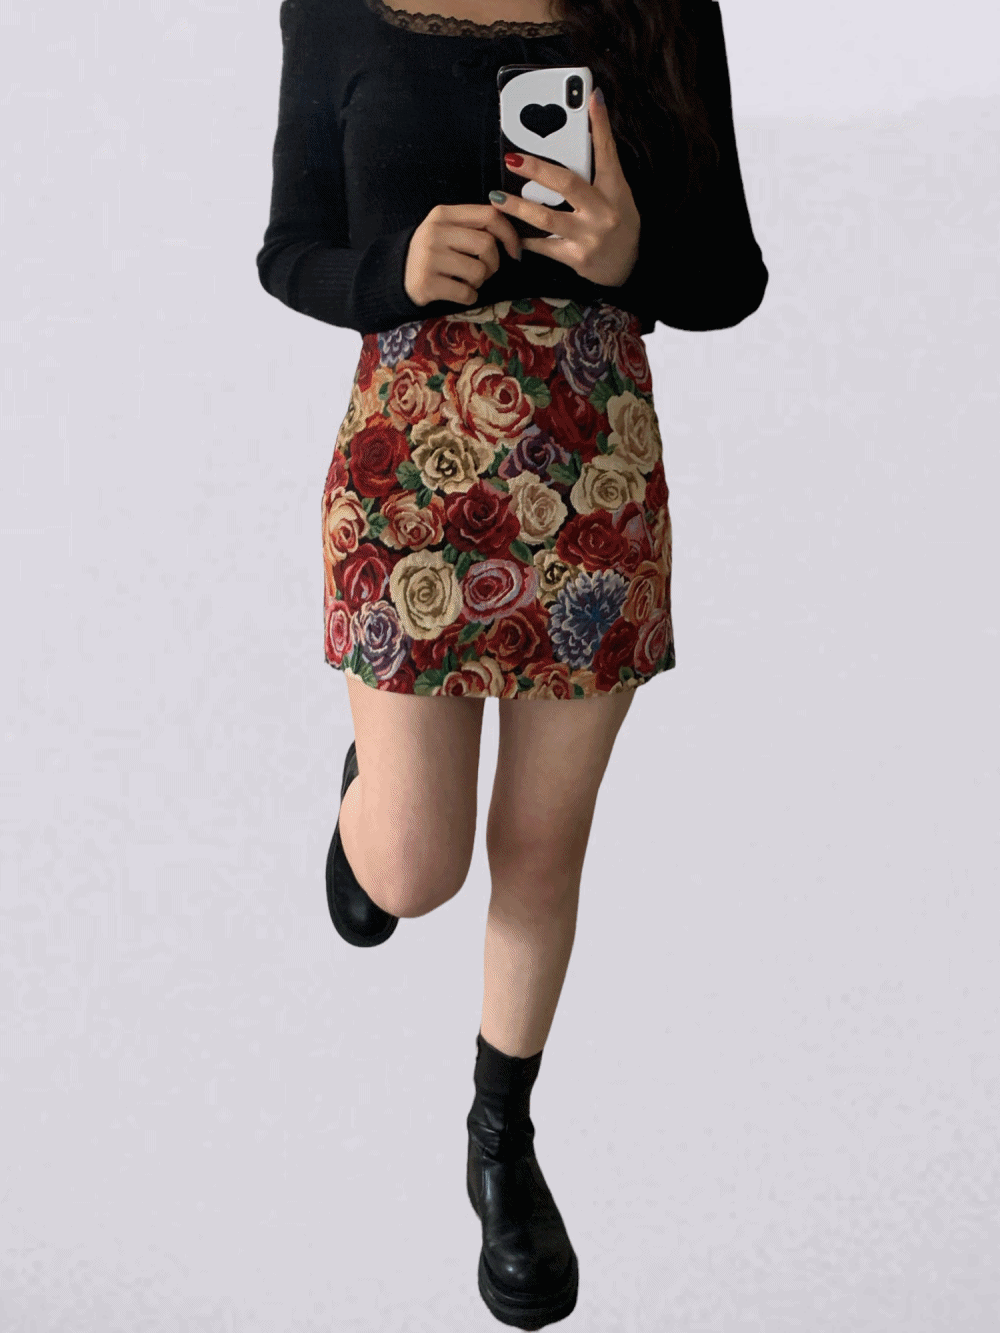 [Skirt] Garden rose jacquard skirt / 2 colors